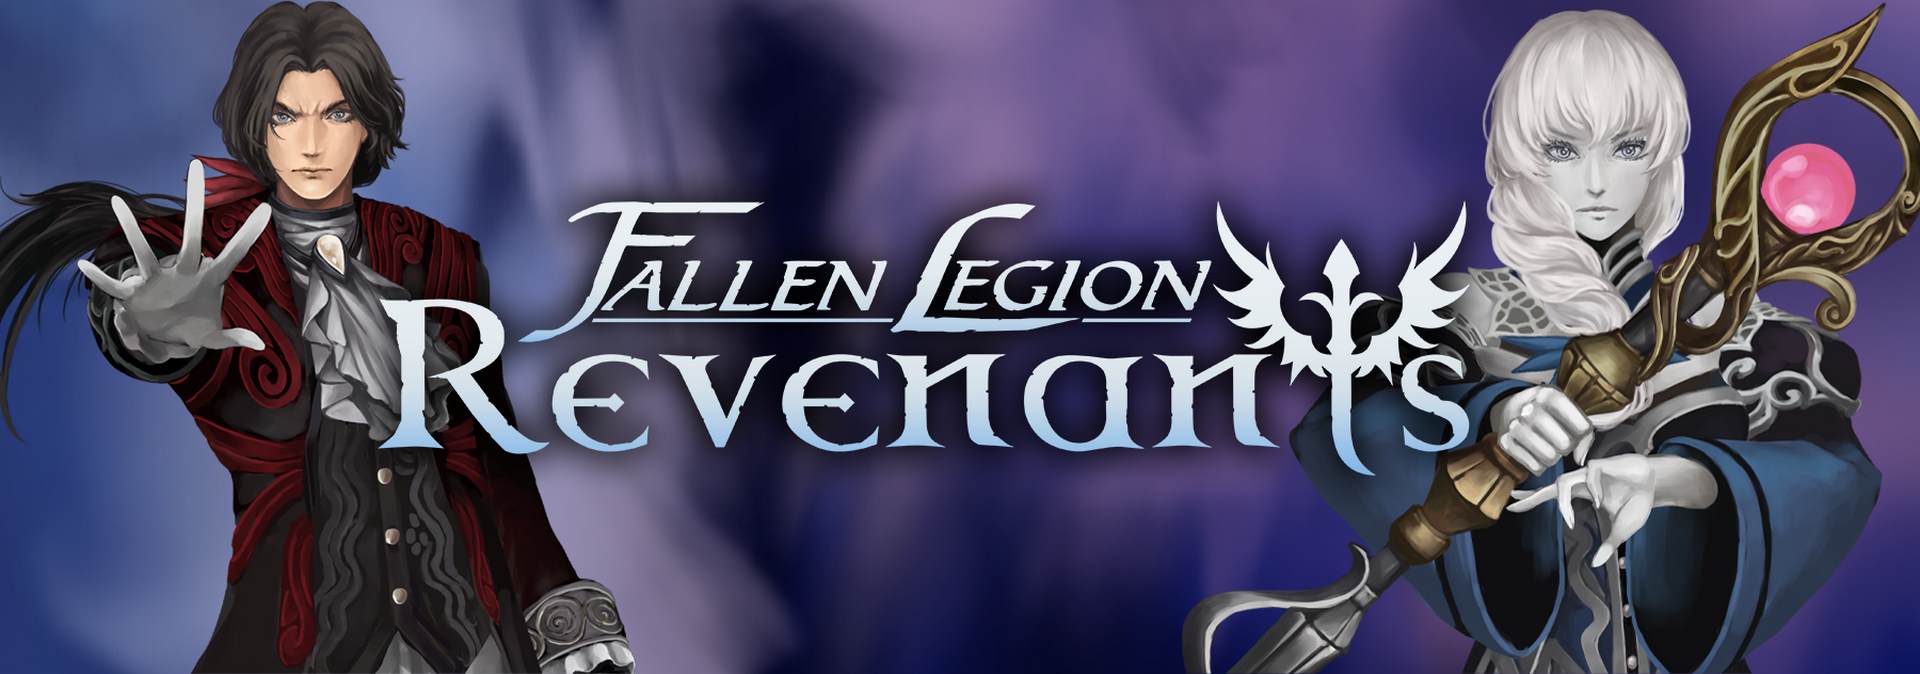 Fallen Legion Revenants for ios download free